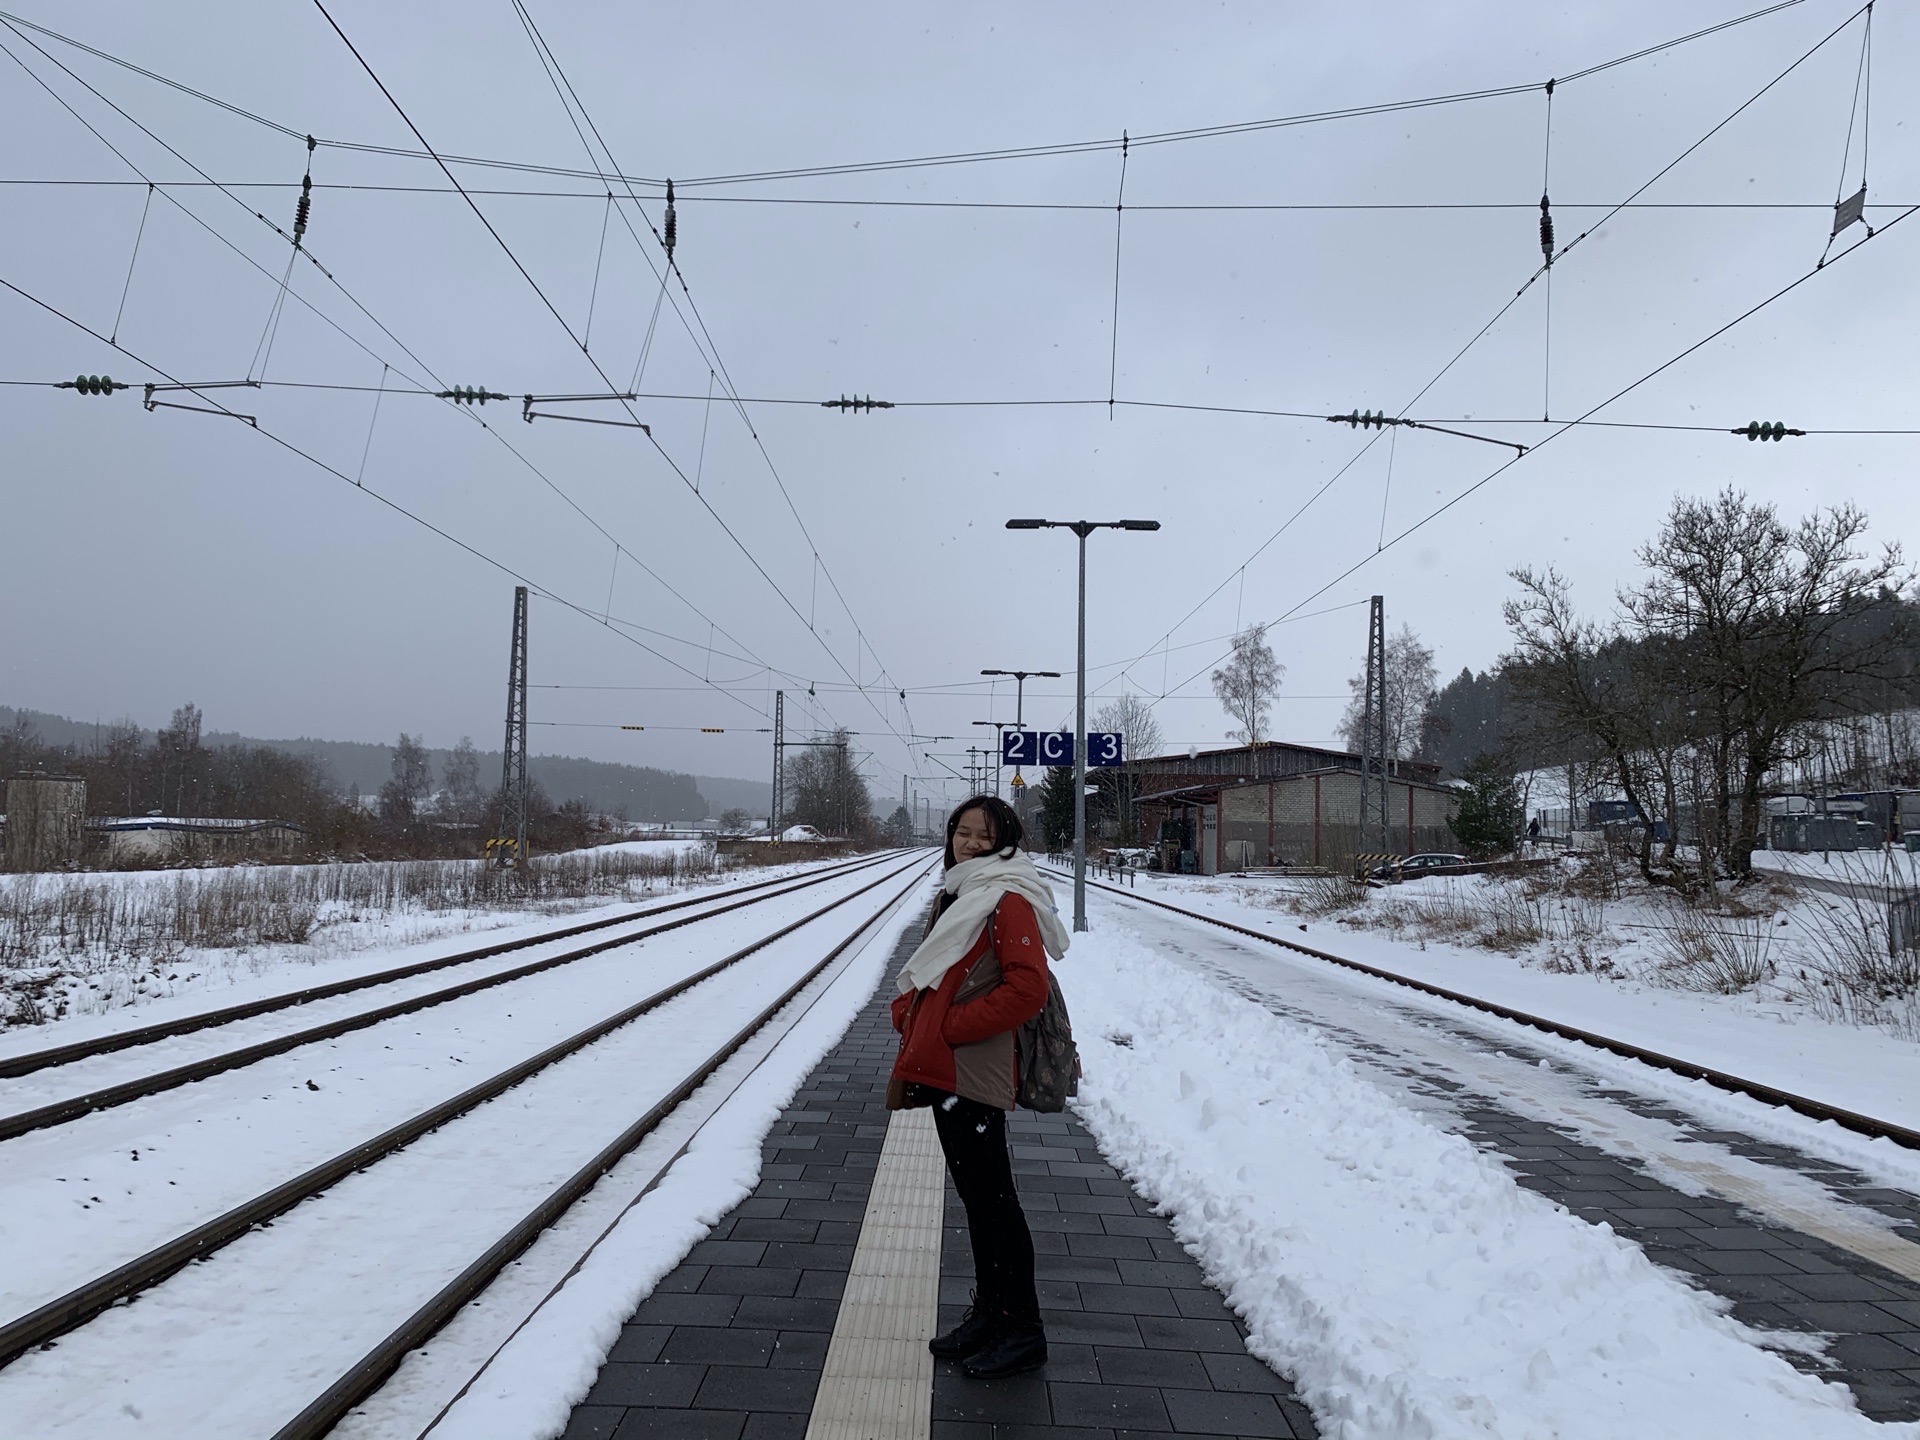 到St. Georgen 當天，火車進站，就開始下雪❄️，持續了半天，雪停了，天空放晴，空氣格外清新